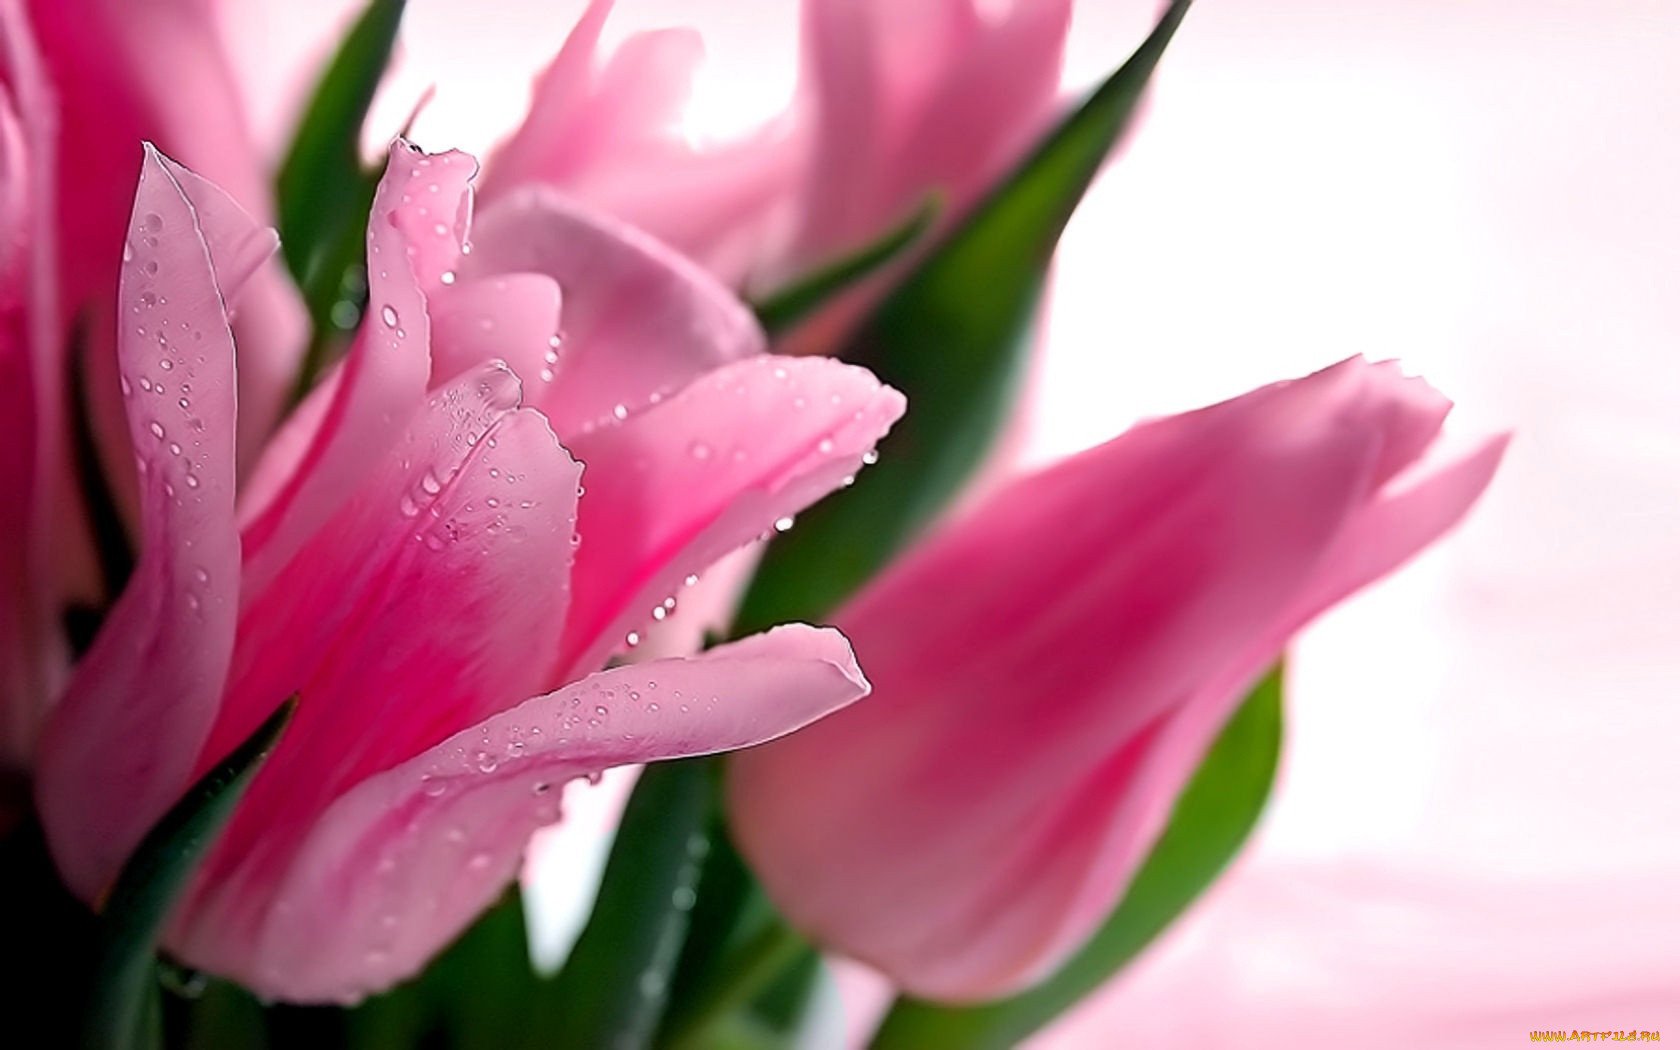 Пожелания друзьям весенние картинки. Розовые тюльпаны. Нежные тюльпаны. Пожелания. Красивые пожелания друзьям в стихах.